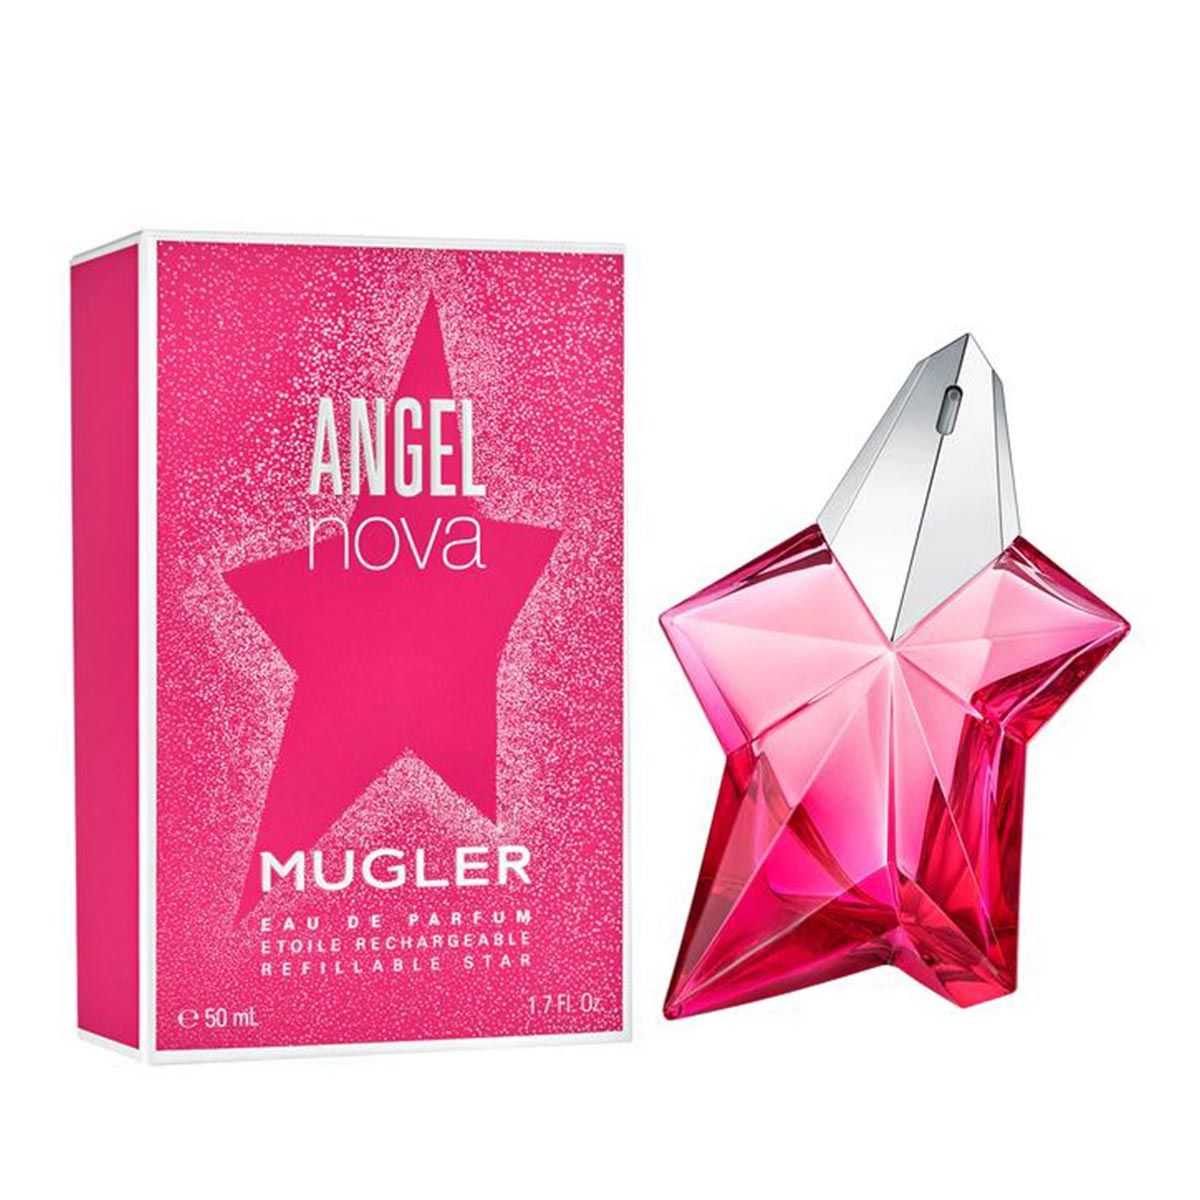  Mugler Angel Nova 